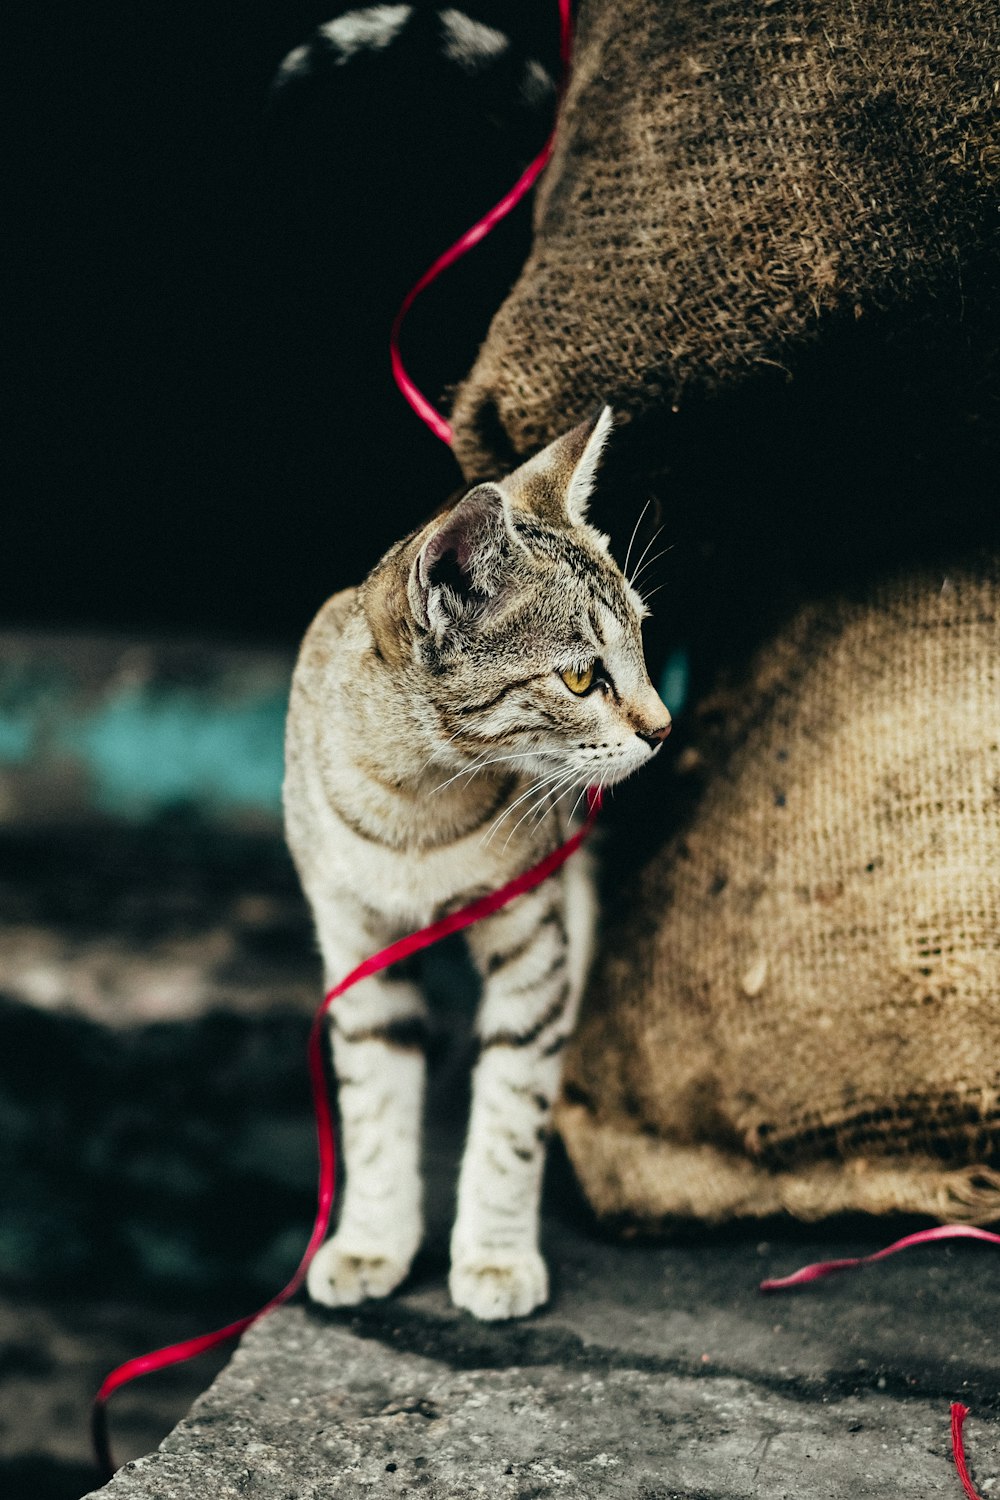 빨간 가죽 끈을 가진 갈색 얼룩 고양이 사진 – Unsplash의 무료 잠무와 카슈미르 이미지